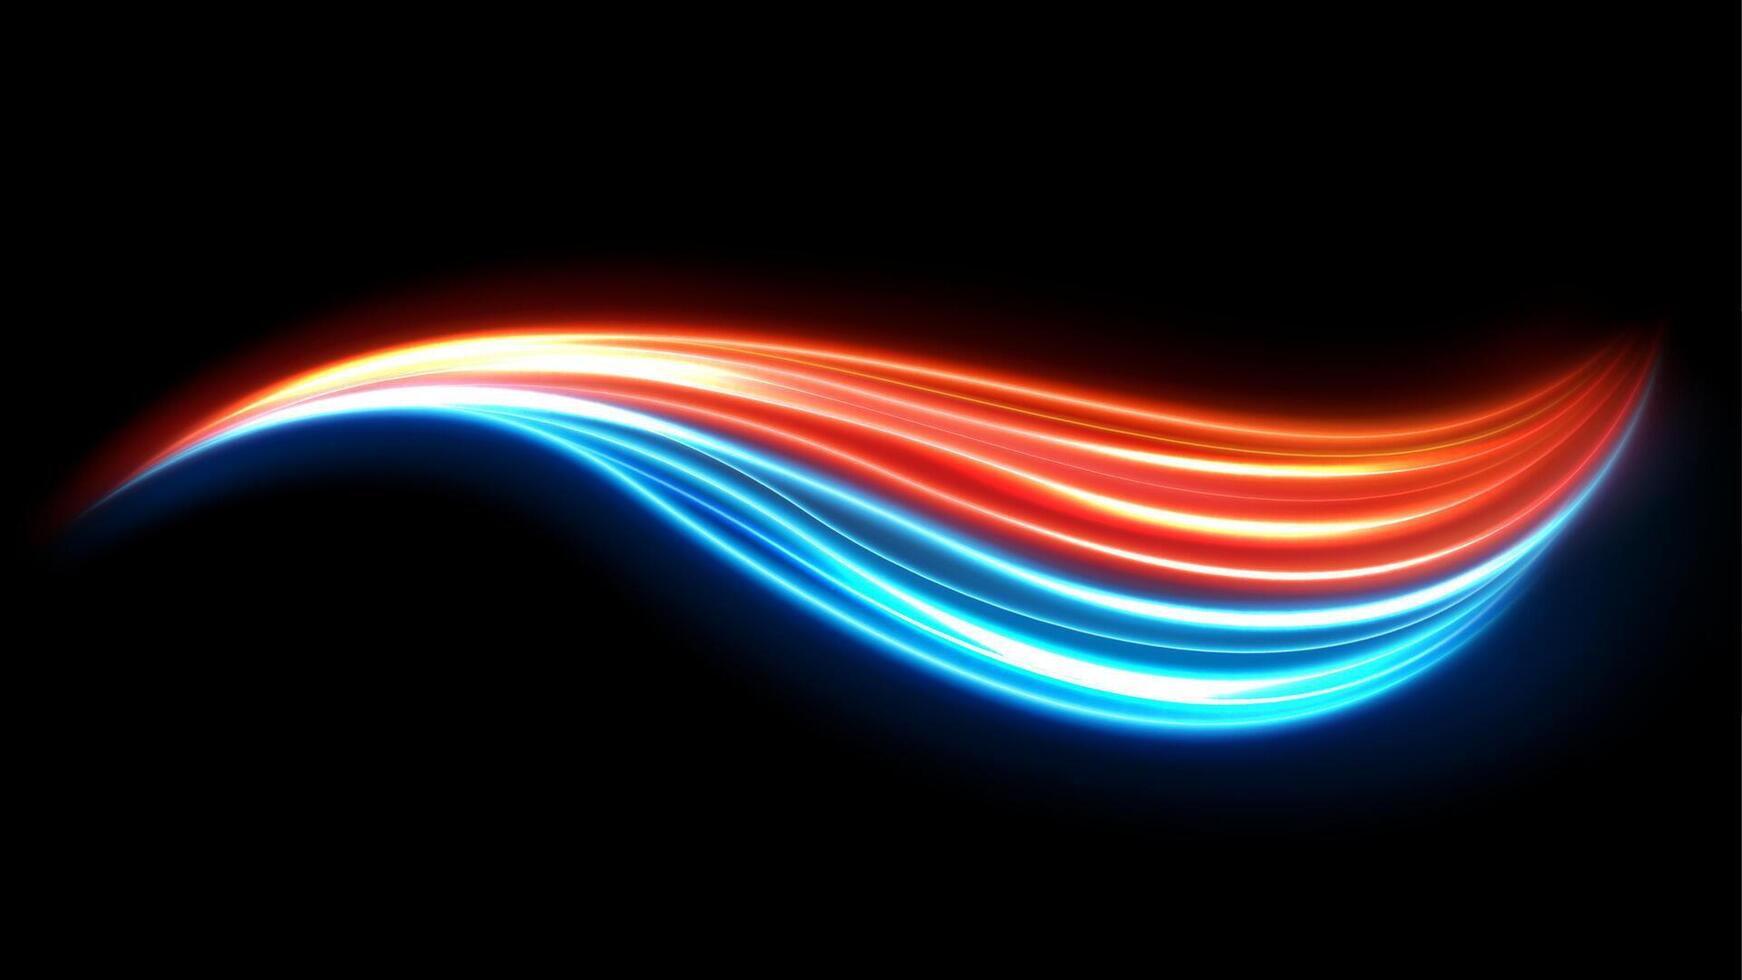 kleurrijke lichtsporen, langdurig bewegingsonscherpte-effect. vector illustratie